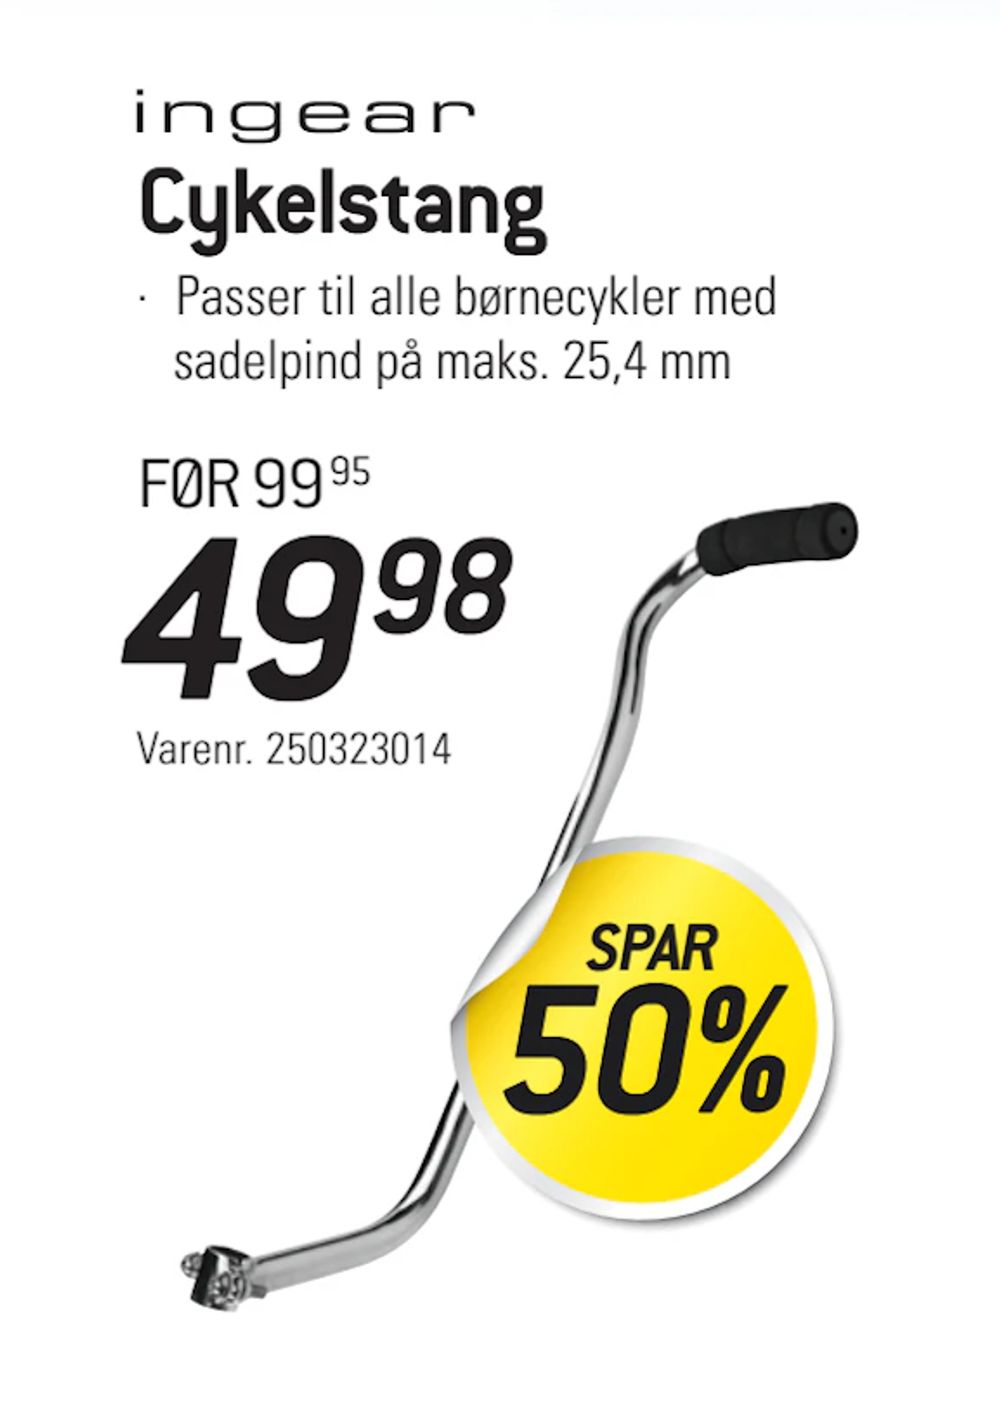 Tilbud på Cykelstang fra thansen til 49,98 kr.